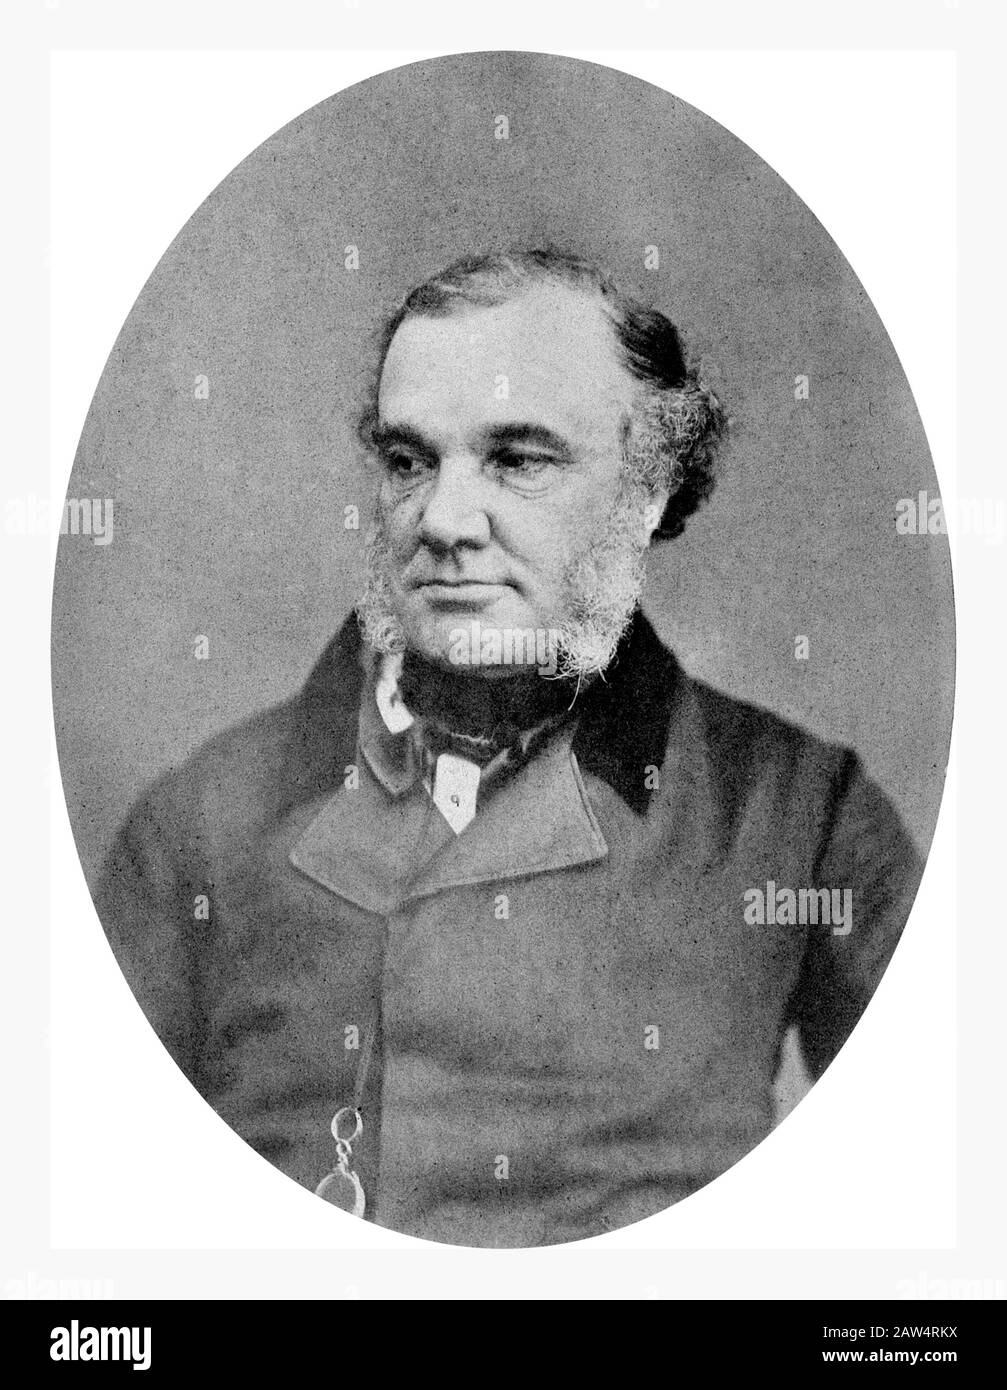 1850 Ca, GROSSBRITANNIEN: Der brite Thomas Addison (* zwischen 1790-1860), renommierter Großarzt und Wissenschaftler am Guy's Hospital in London. Foto vorbei Stockfoto